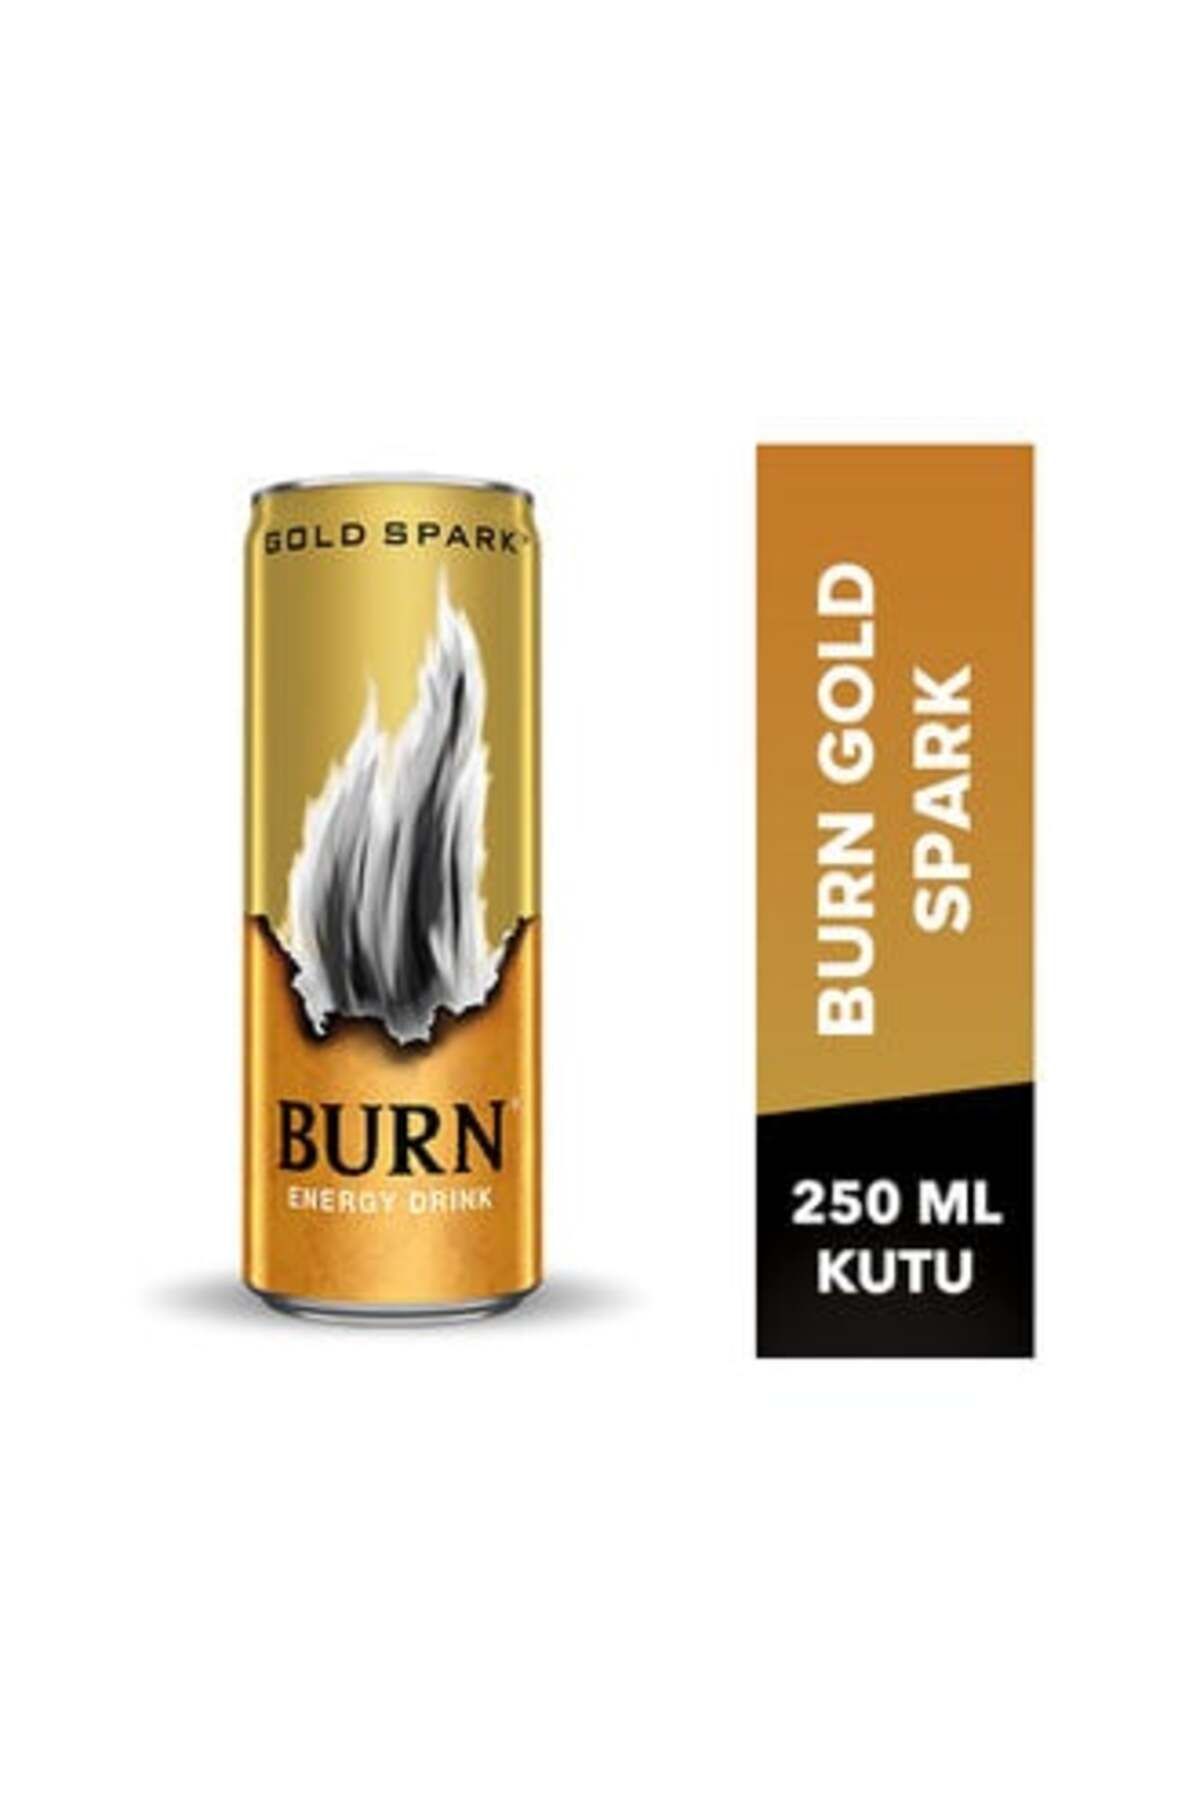 Burn Gold Spark Enerji İçeceği 250 Ml ( 5 ADET )